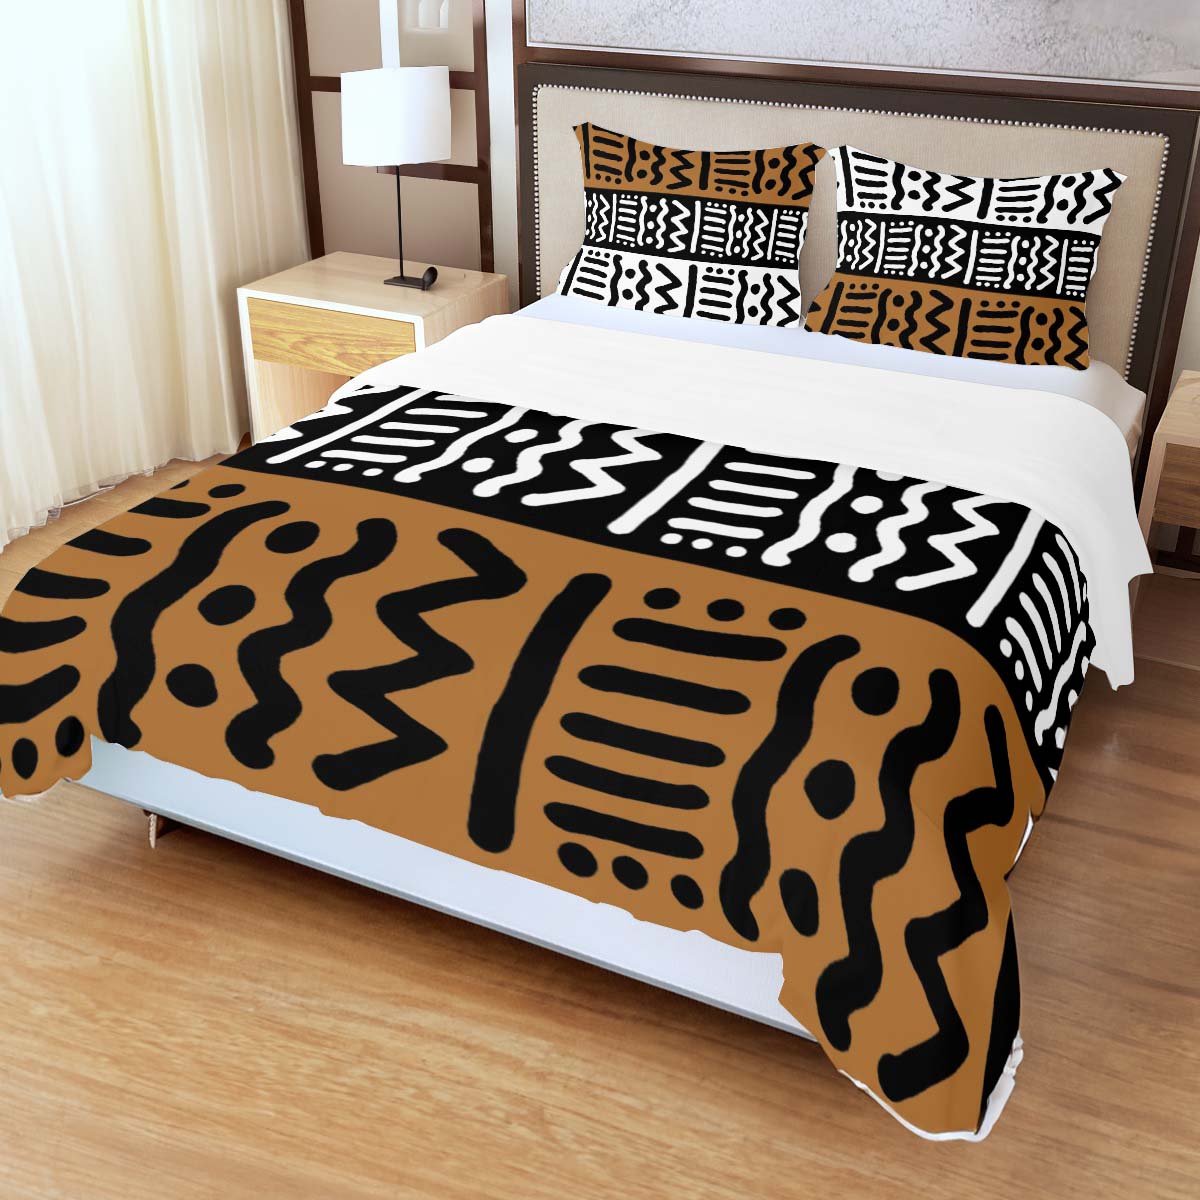 African Inspired Bedding Set Kuba Print Duvet & Pillow Cases